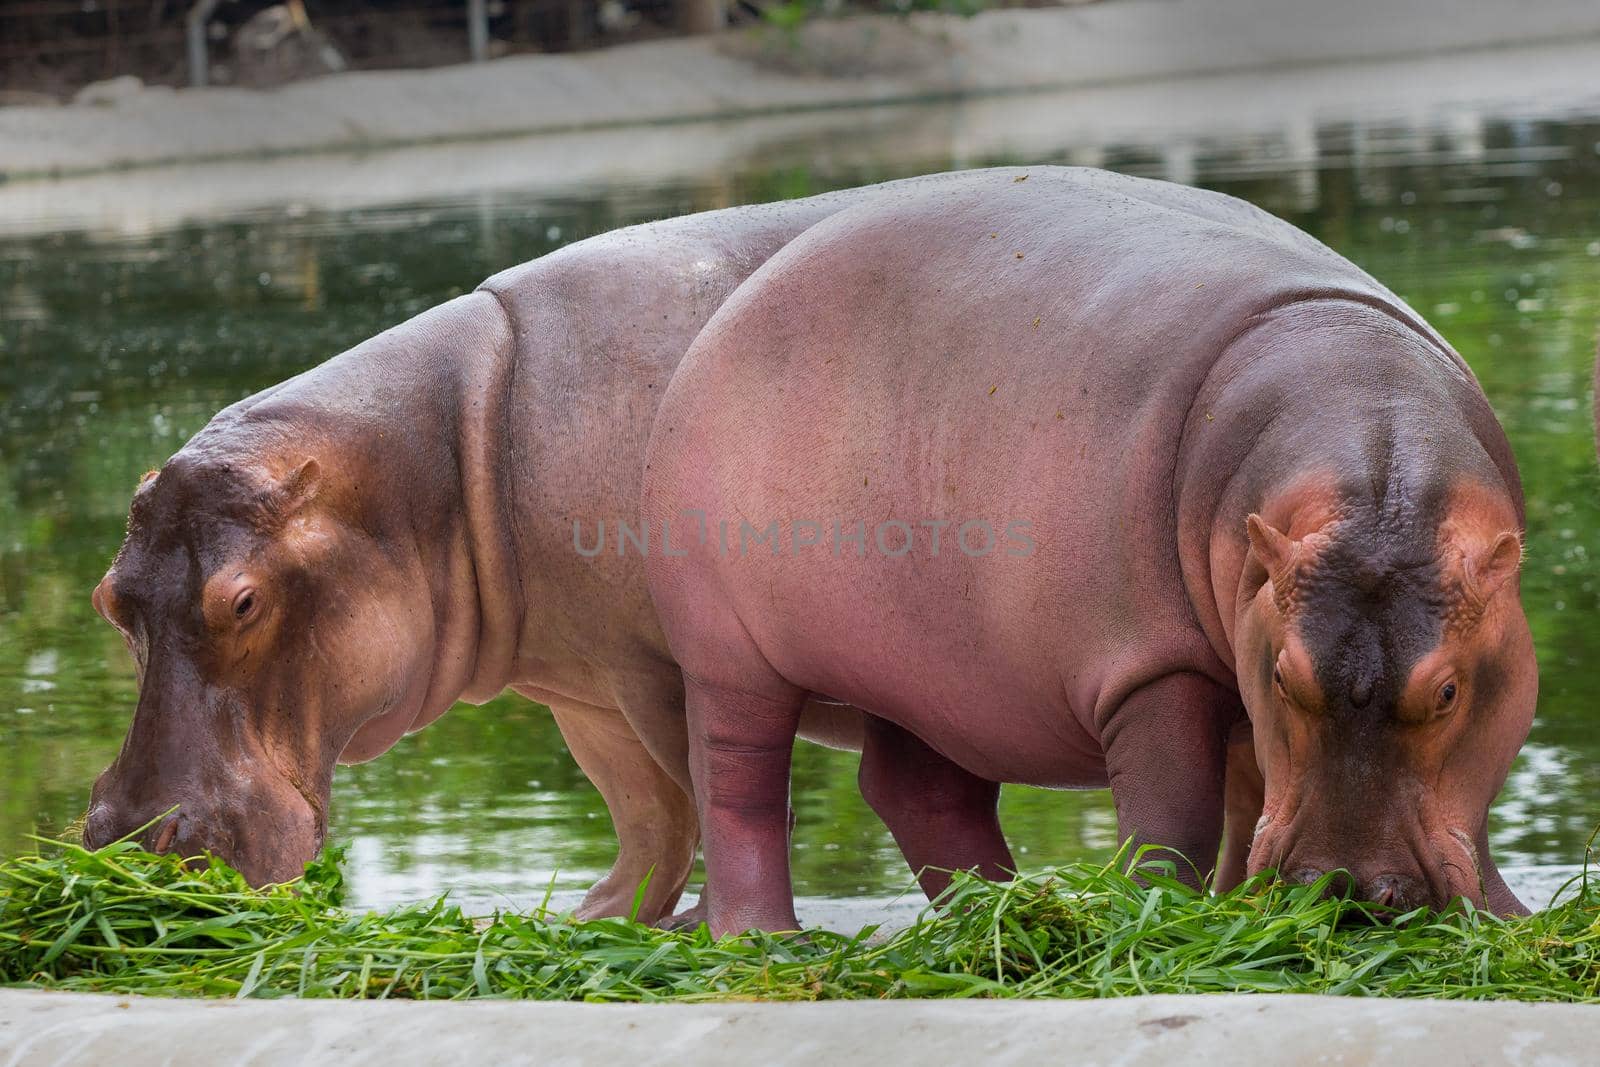 A walking hippopotamus eats in the zoo.